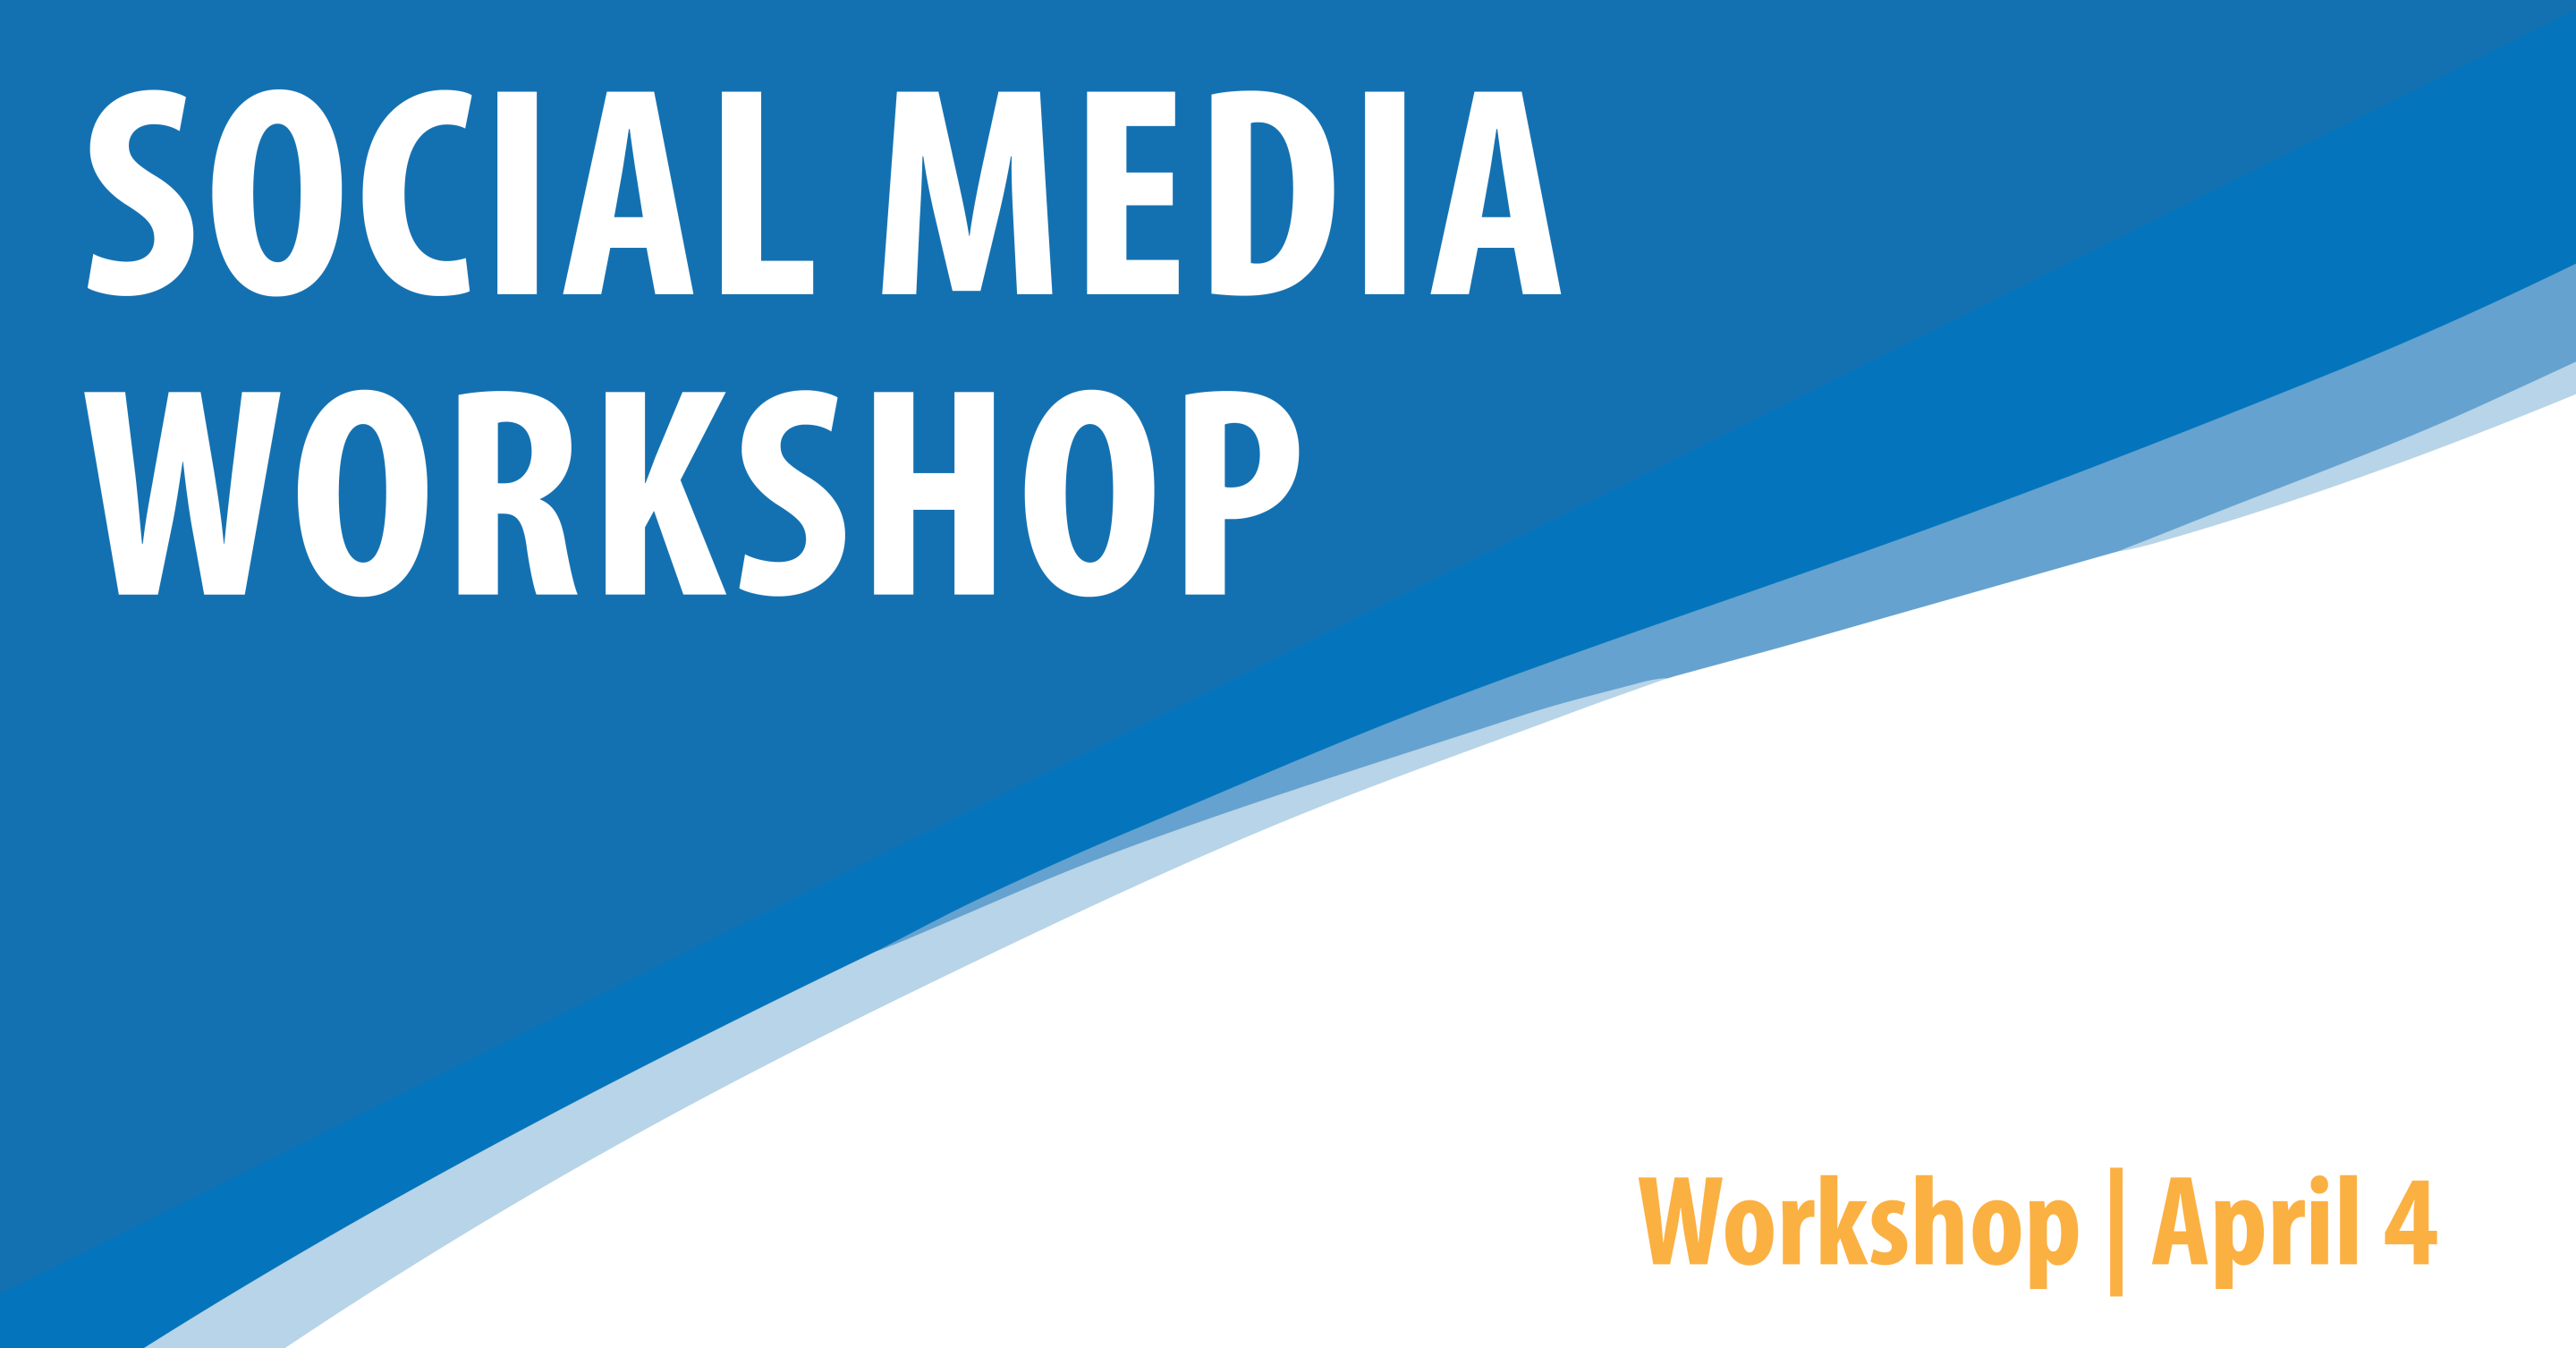 Social Media Workshop - AM Session 8:00-9:30 AM